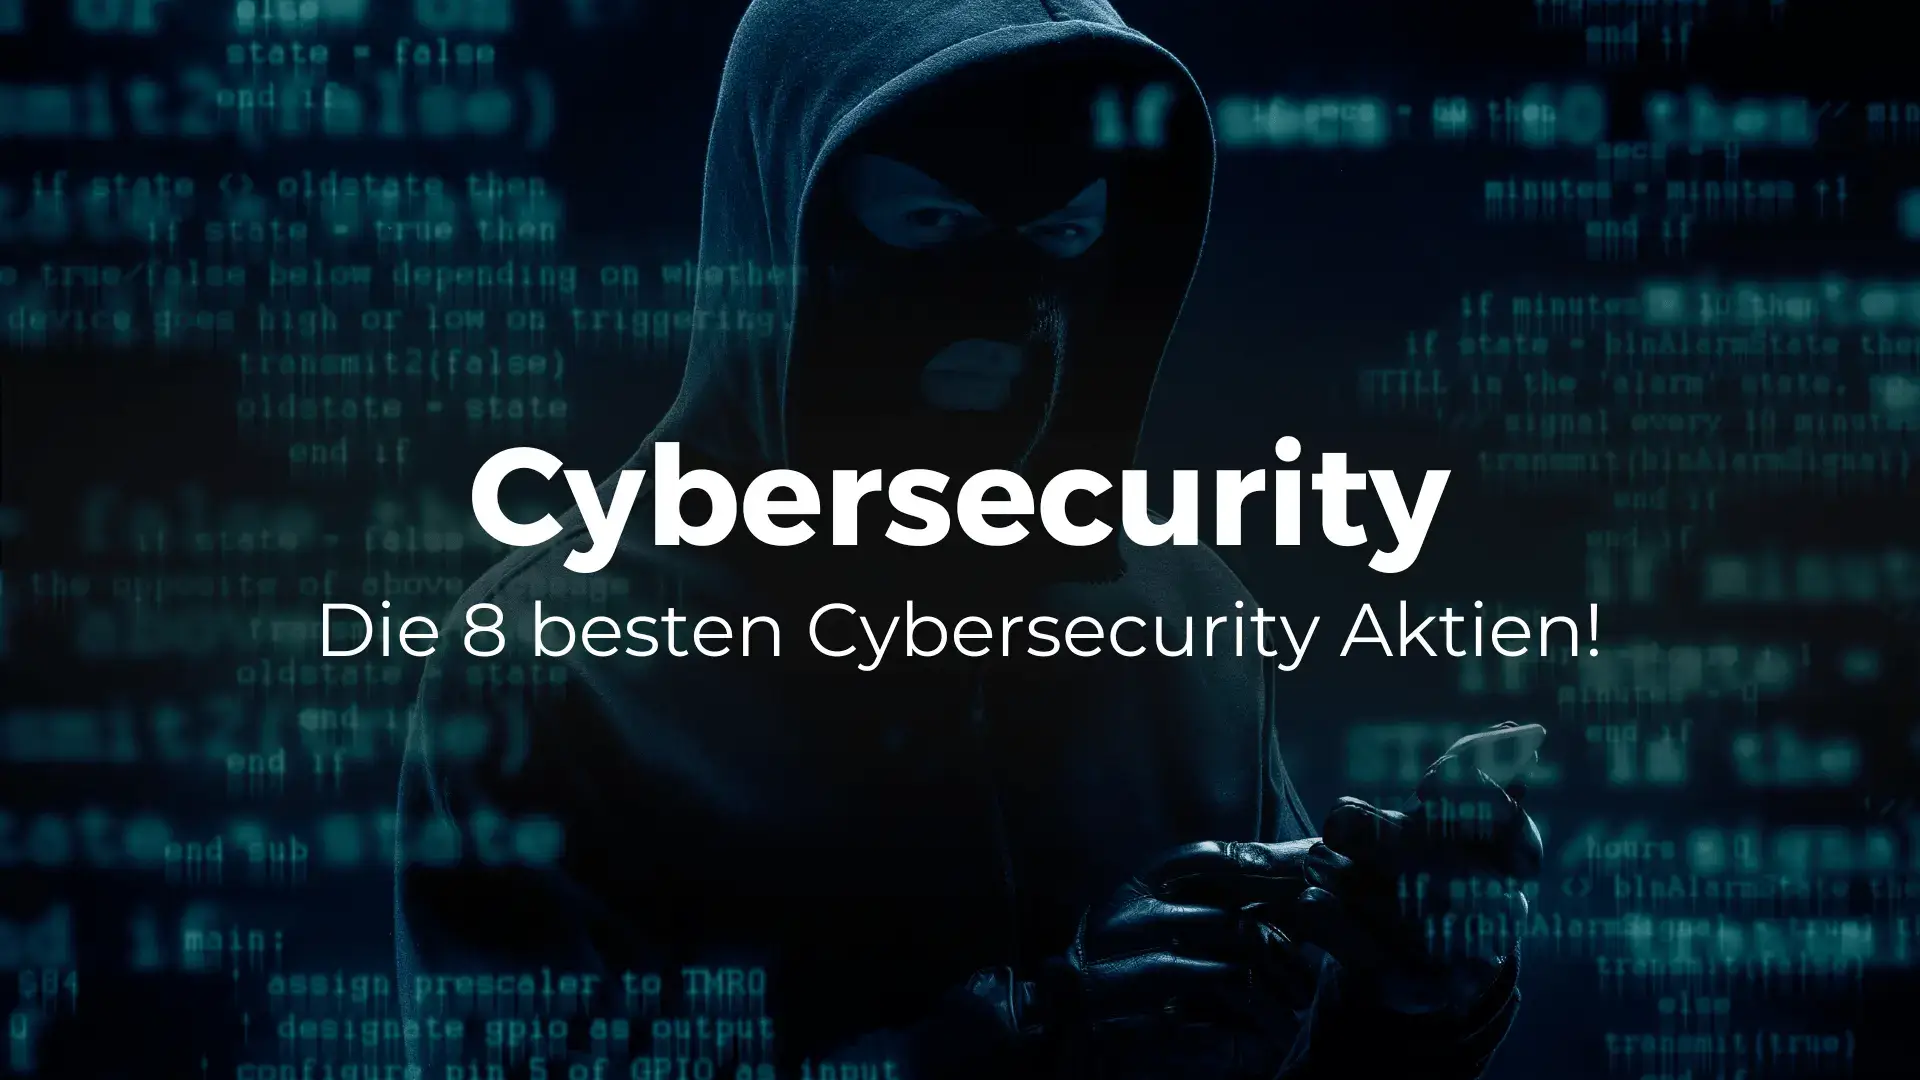 Die besten Cybersecurity Aktien der Welt